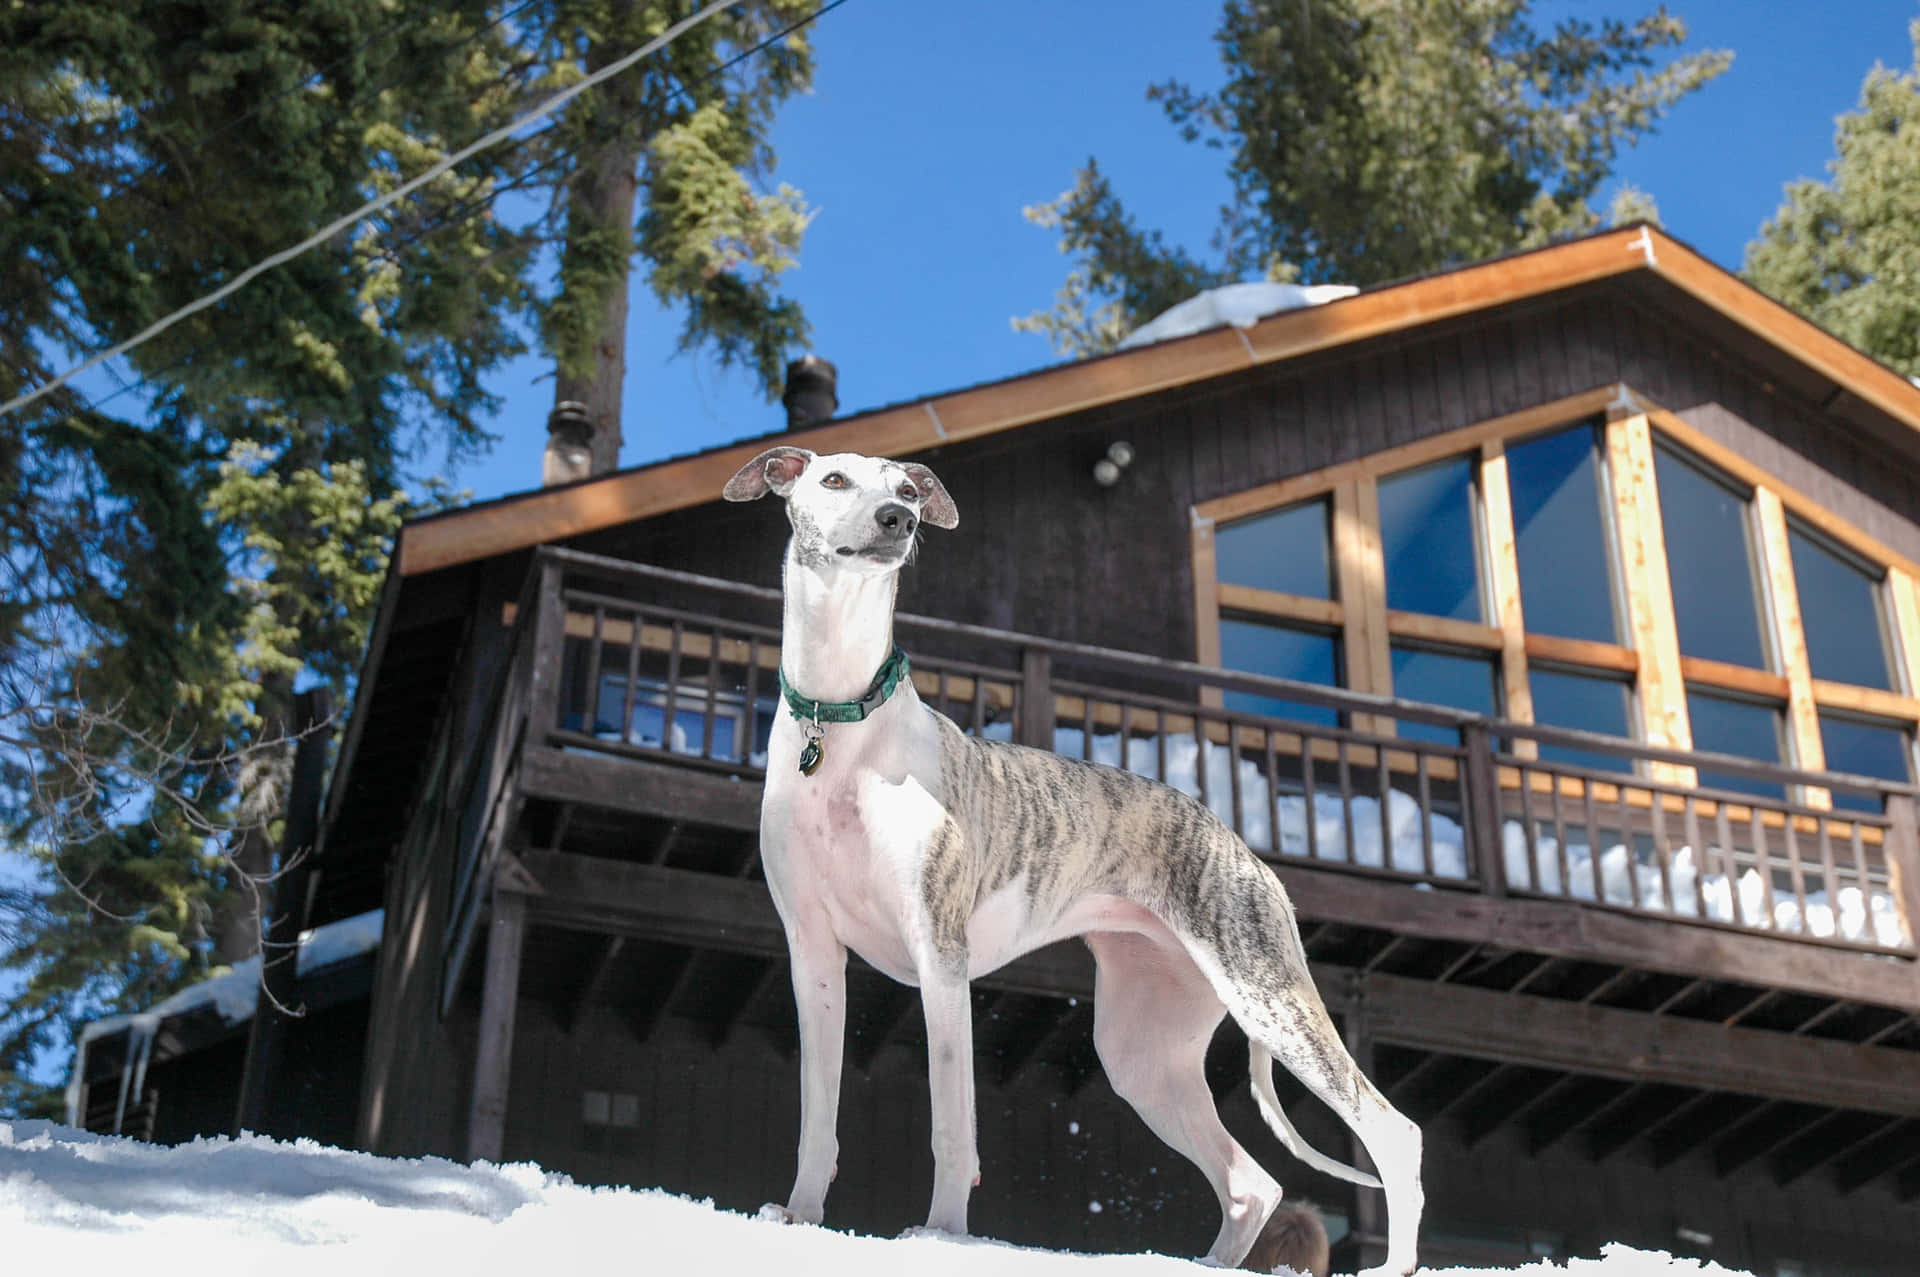 Einwindhund Steht Vor Einer Hütte Im Schnee.